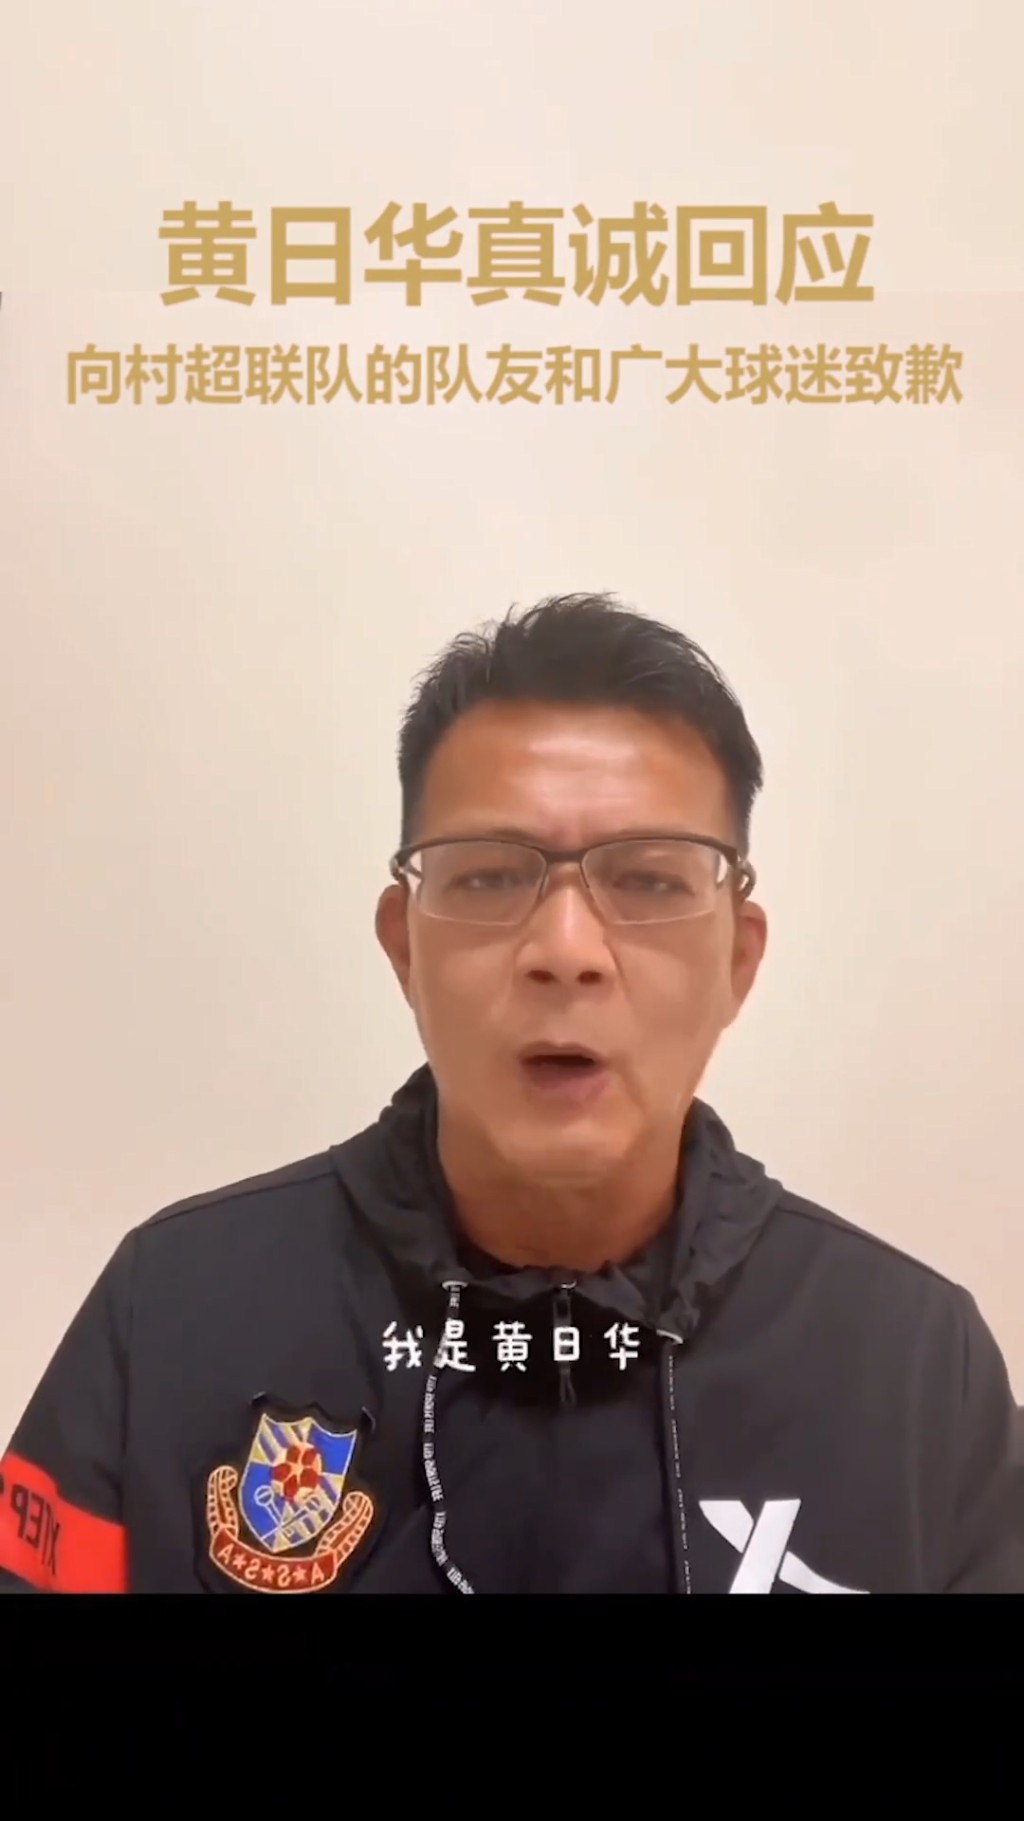 黄日华曾因比赛时怒踢对手被批评，最终在“明星足球队”的官方抖音账号拍片道歉。